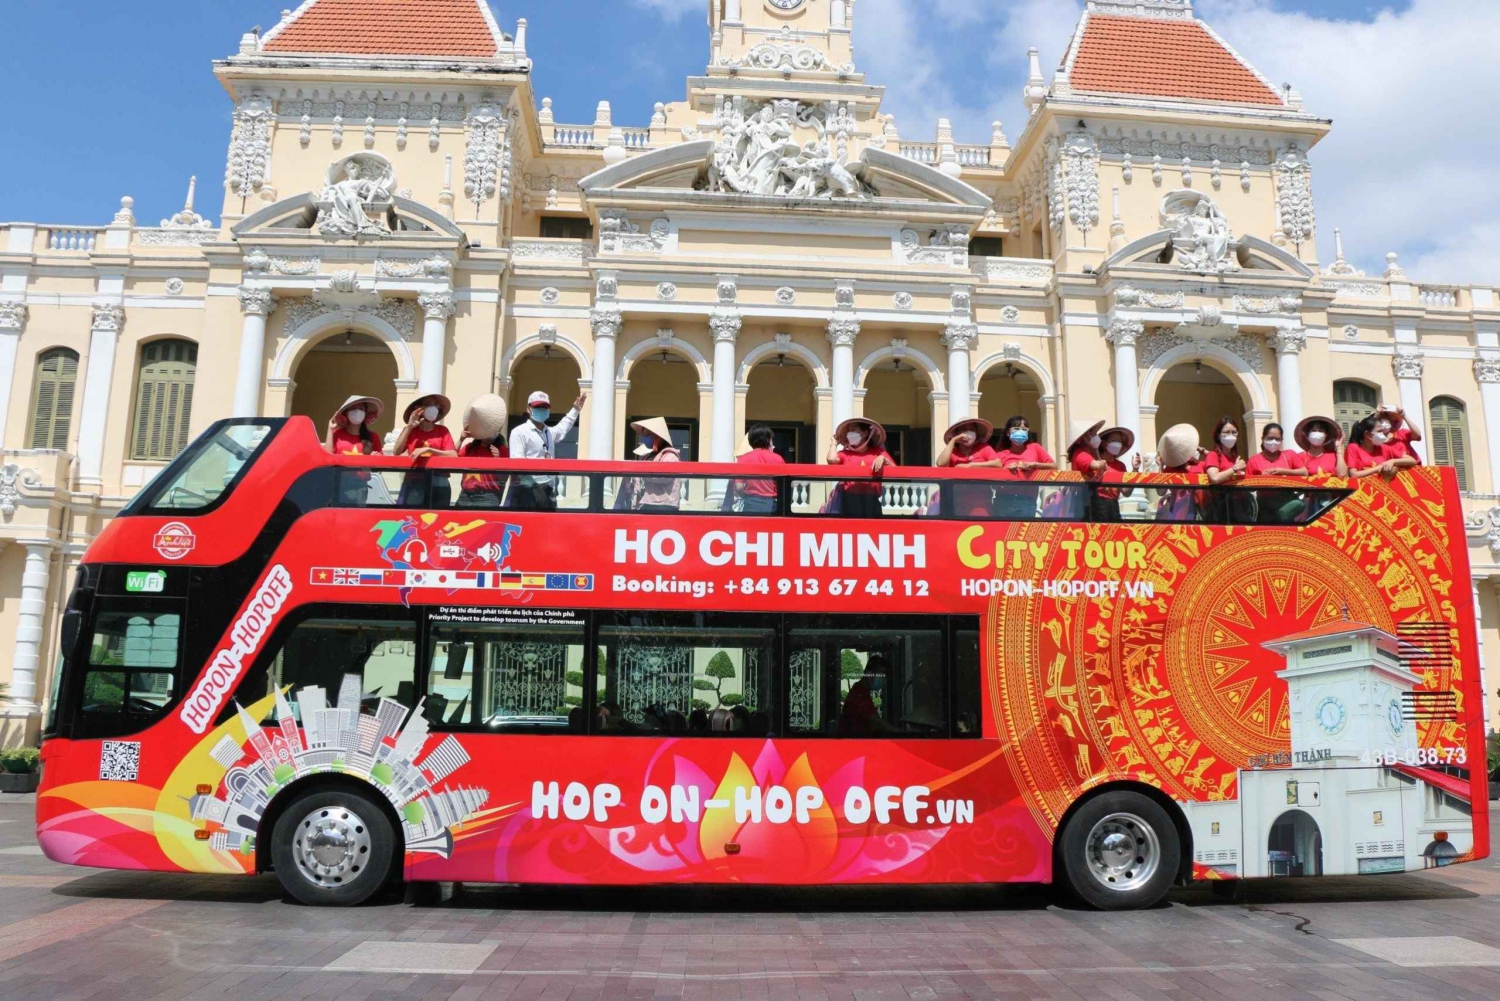 Ciudad Ho Chi Minh: tour en autobús turístico de 4 horas con paradas libres